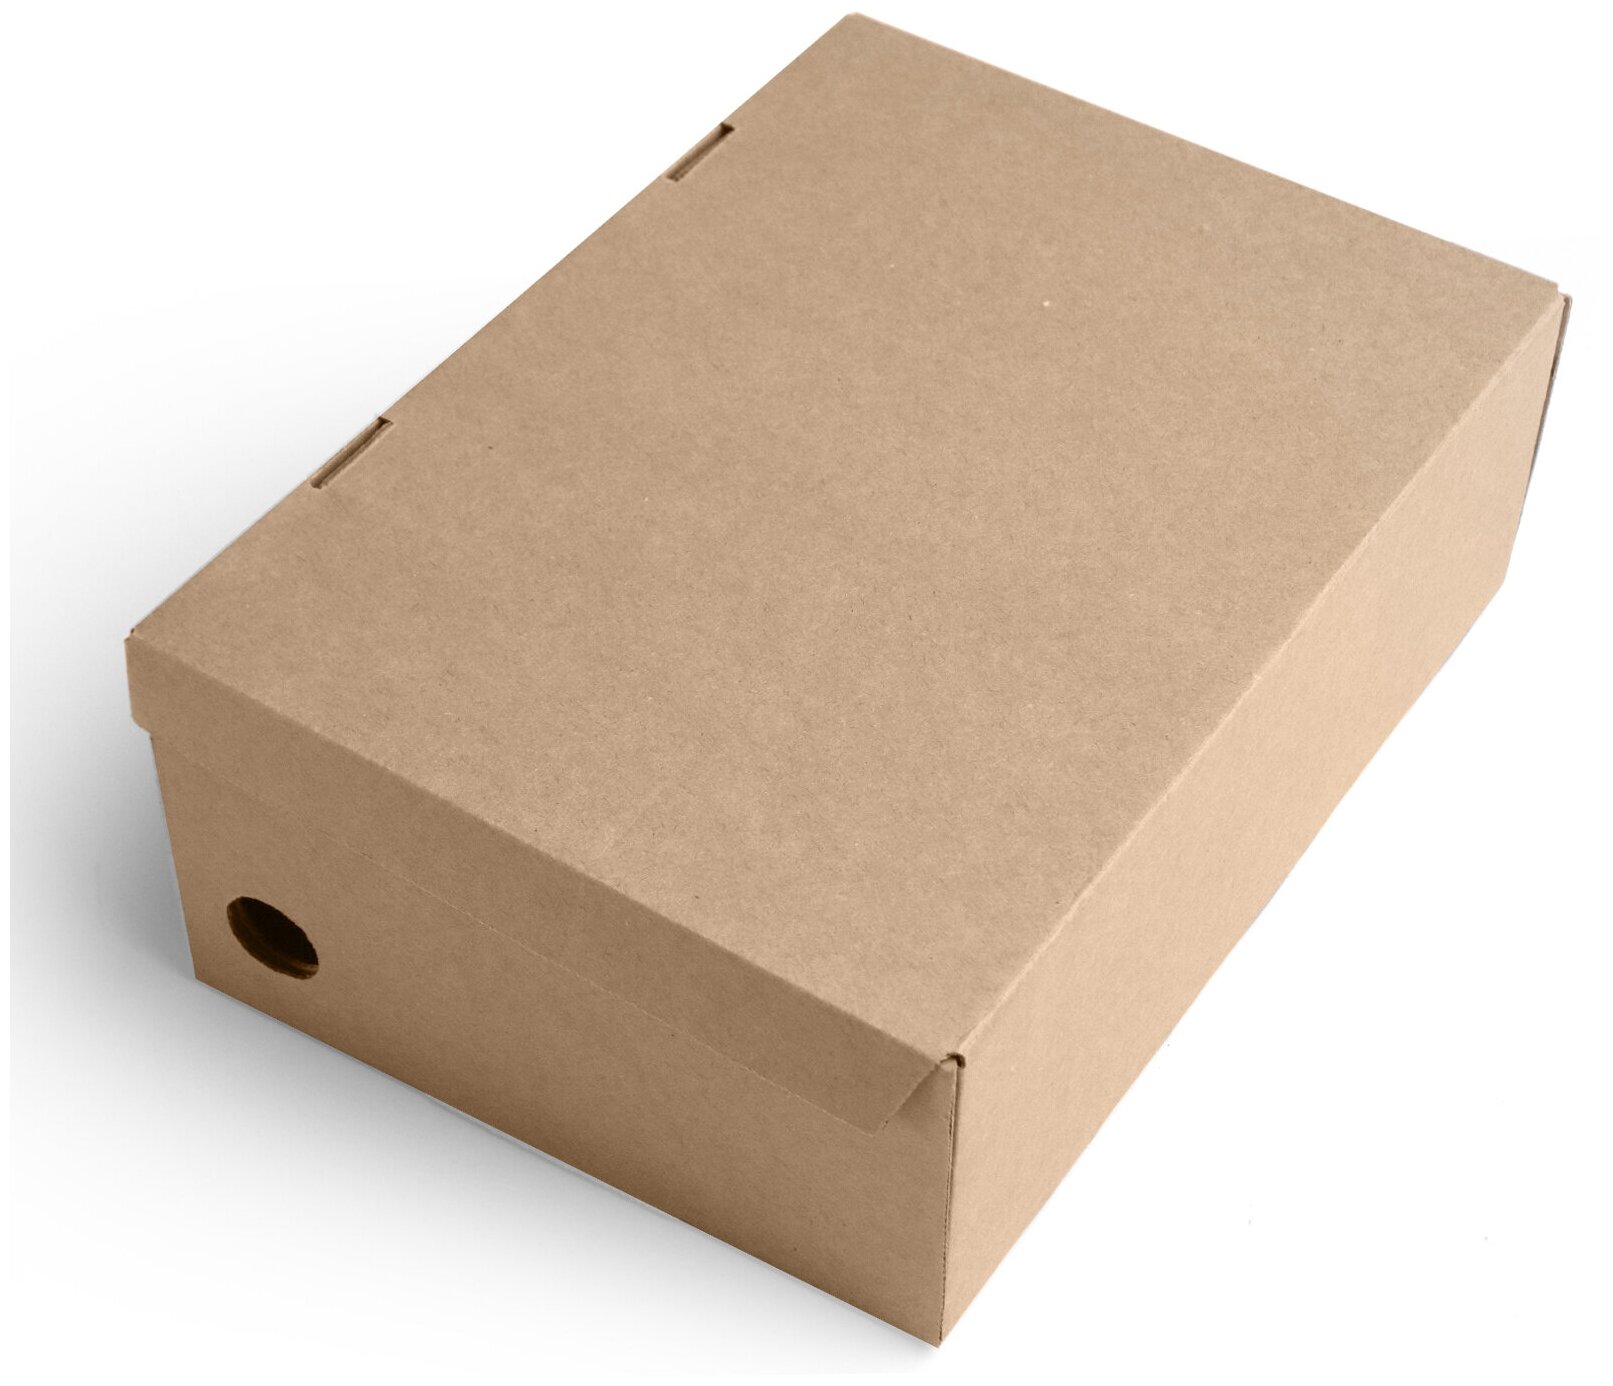 Коробка для хранения обуви 30х20х10 см (Т11 Е) - 5 шт. Картонный органайзер 300х200х100 мм. - фотография № 3